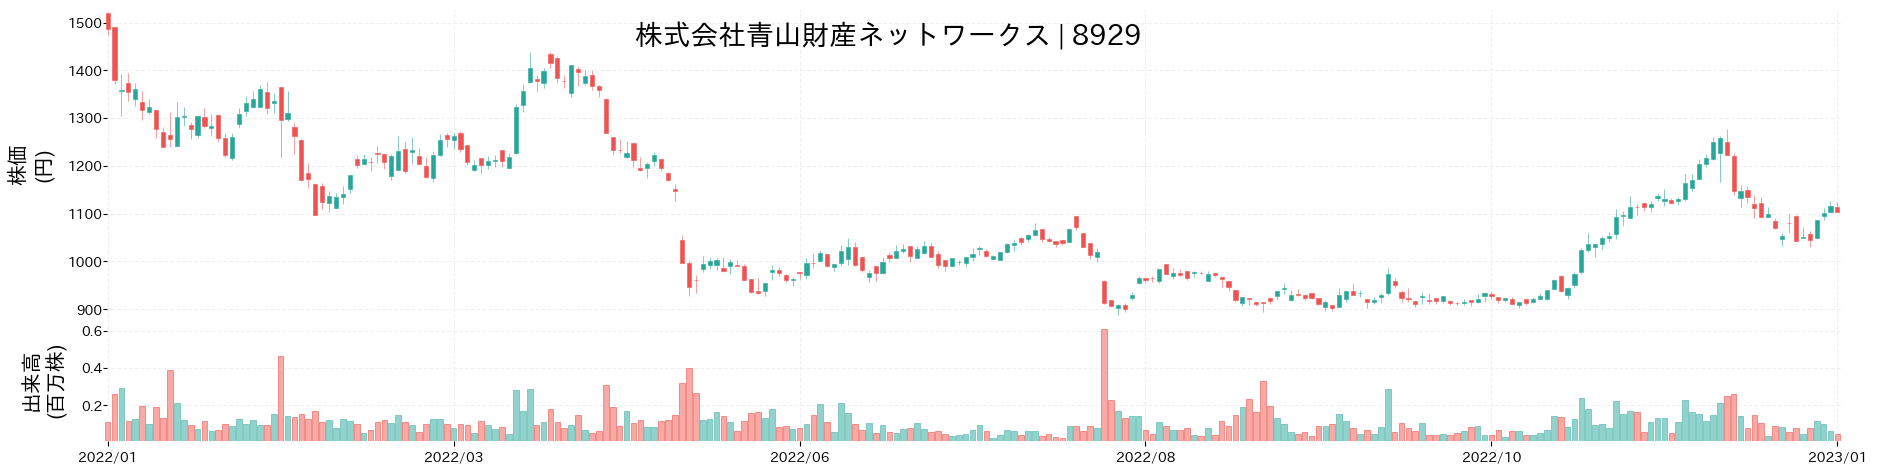 青山財産ネットワークスの株価推移(2022)